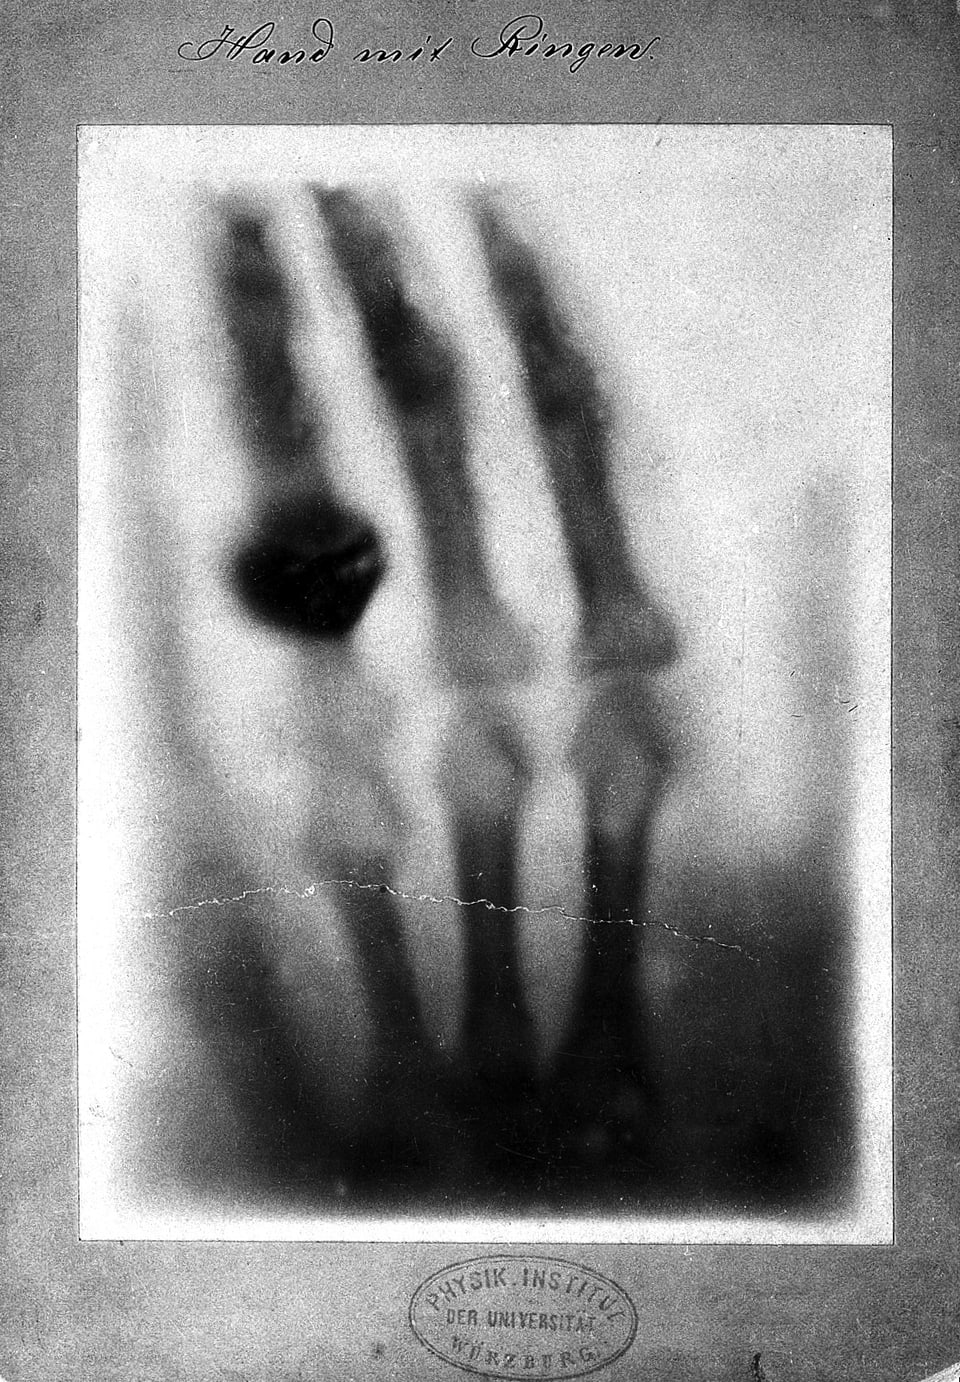 Röntgenaufnahme eienr Hand mit Ring.